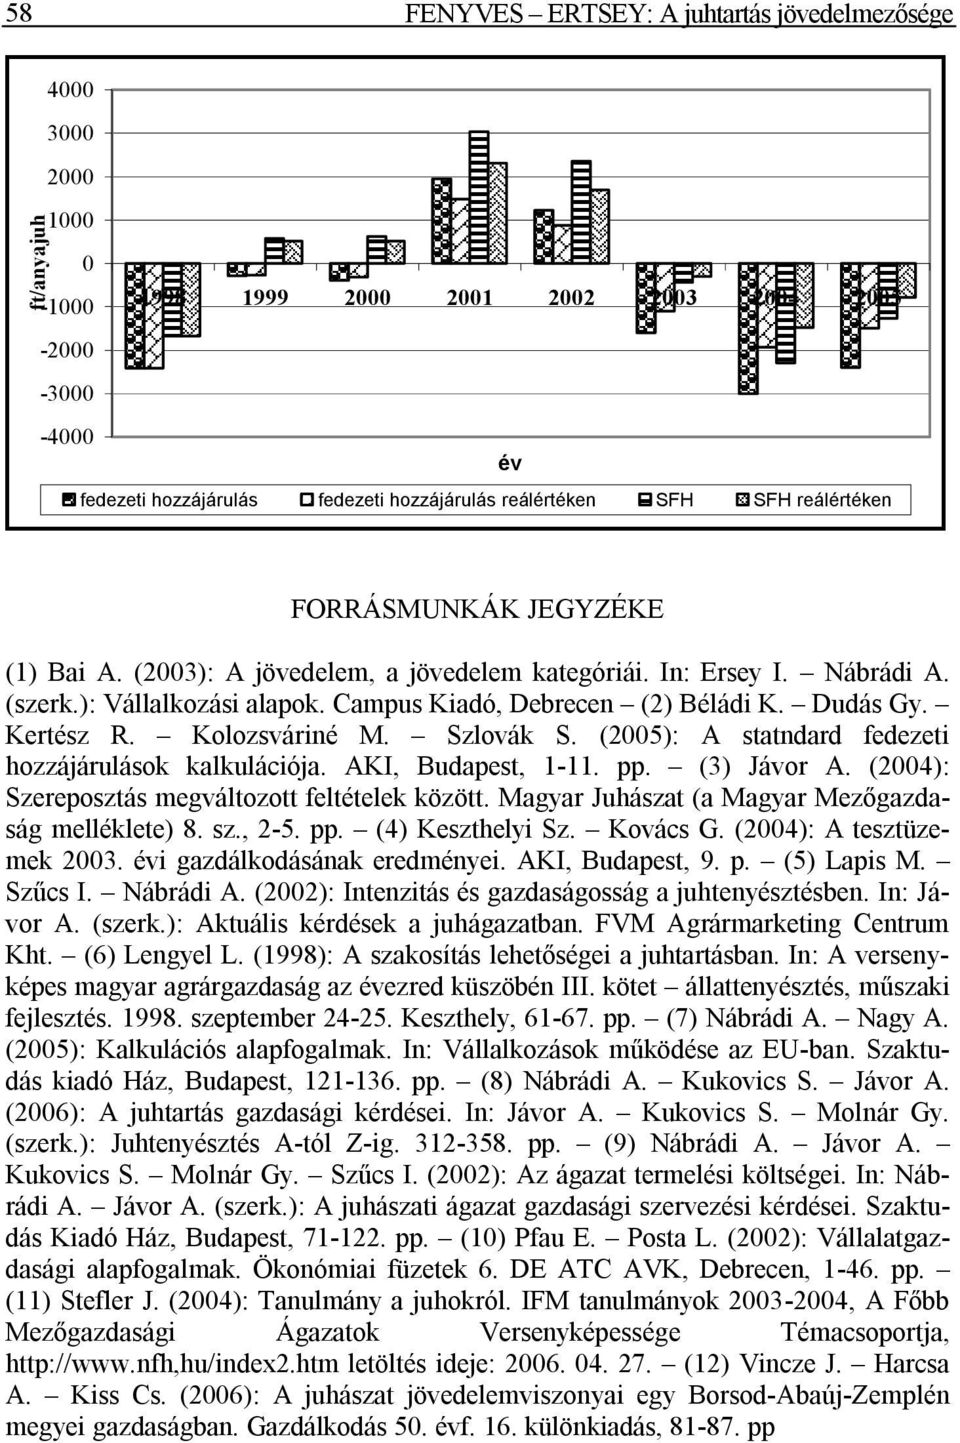 Szlovák S. (2005): A statndard fedezeti hozzájárulások kalkulációja. AKI, Budapest, 1-11. pp. (3) Jávor A. (2004): Szereposztás megváltozott feltételek között.